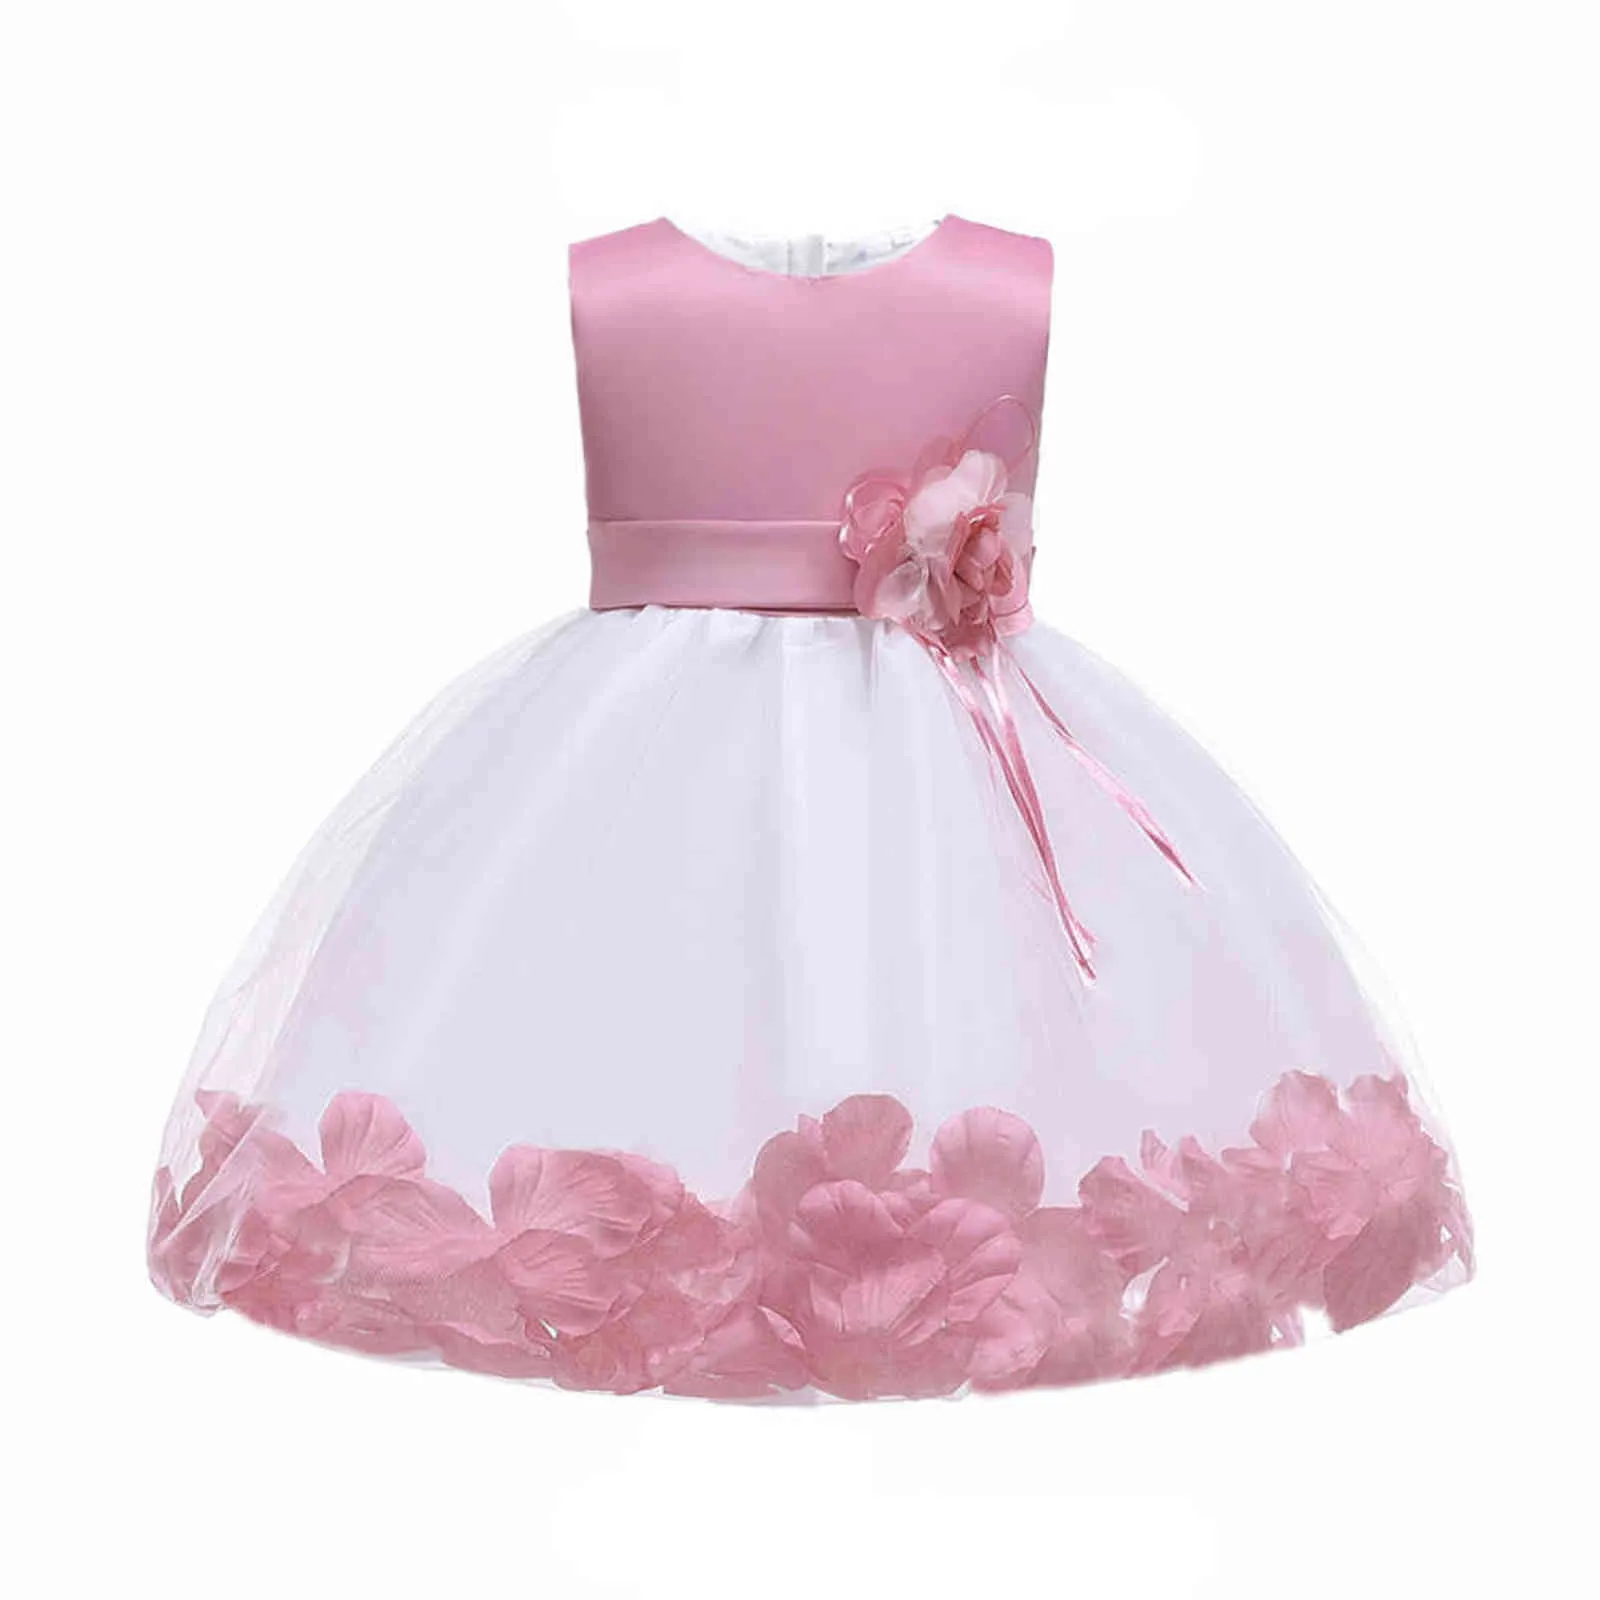 Sommer 1 Jahr Geburtstag Mädchen Prinzessin Kleid Blume Kuchen Baby Mädchen Kleid Party Hochzeit Taufe Kinder Kleidung Kostüm Vestidos G1129